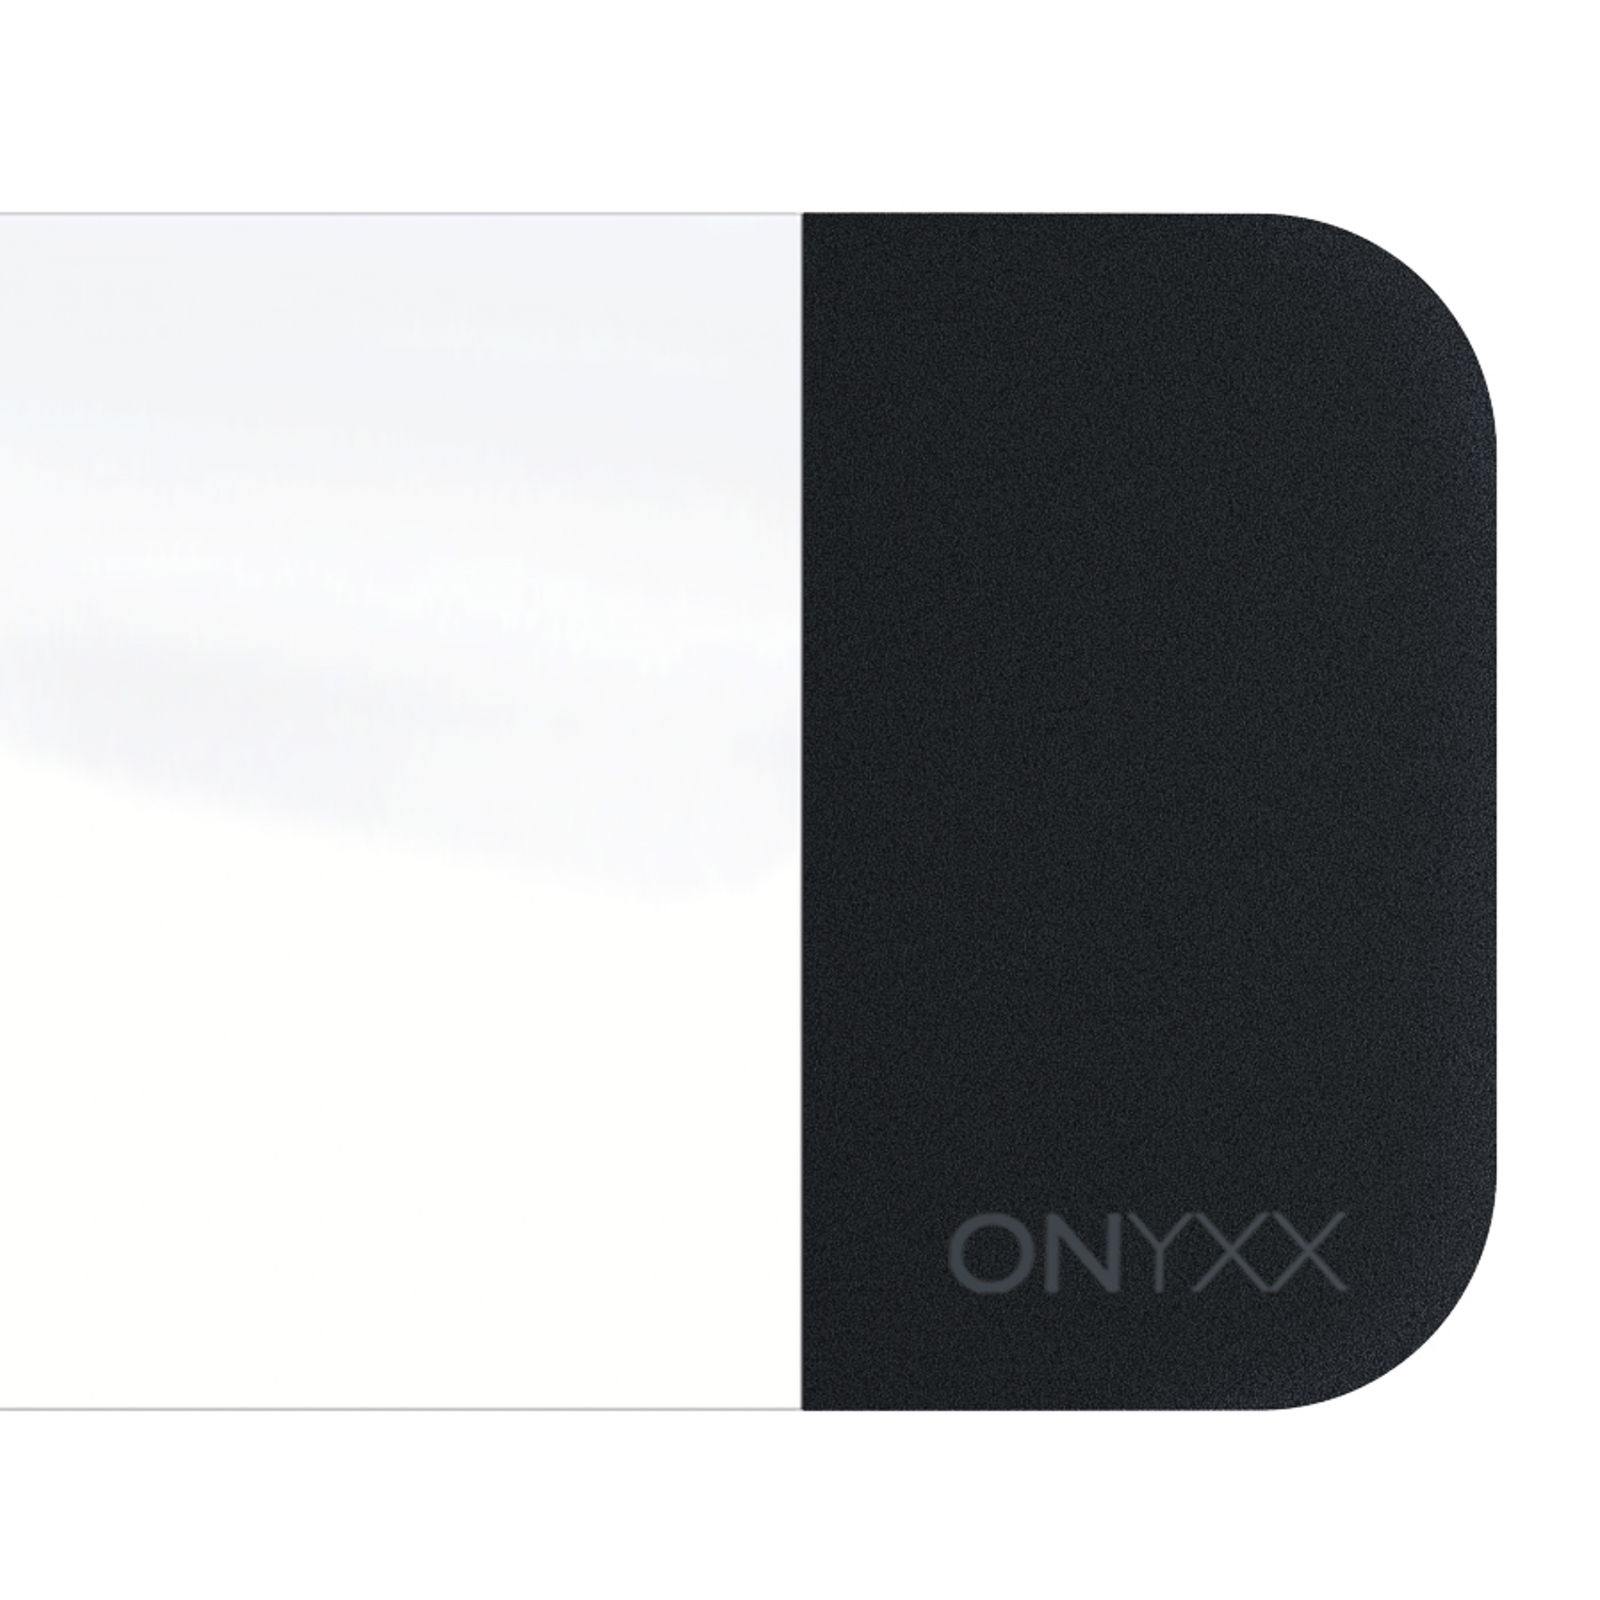 GRIMMEISEN Onyxx Linea Pro pendant white/black